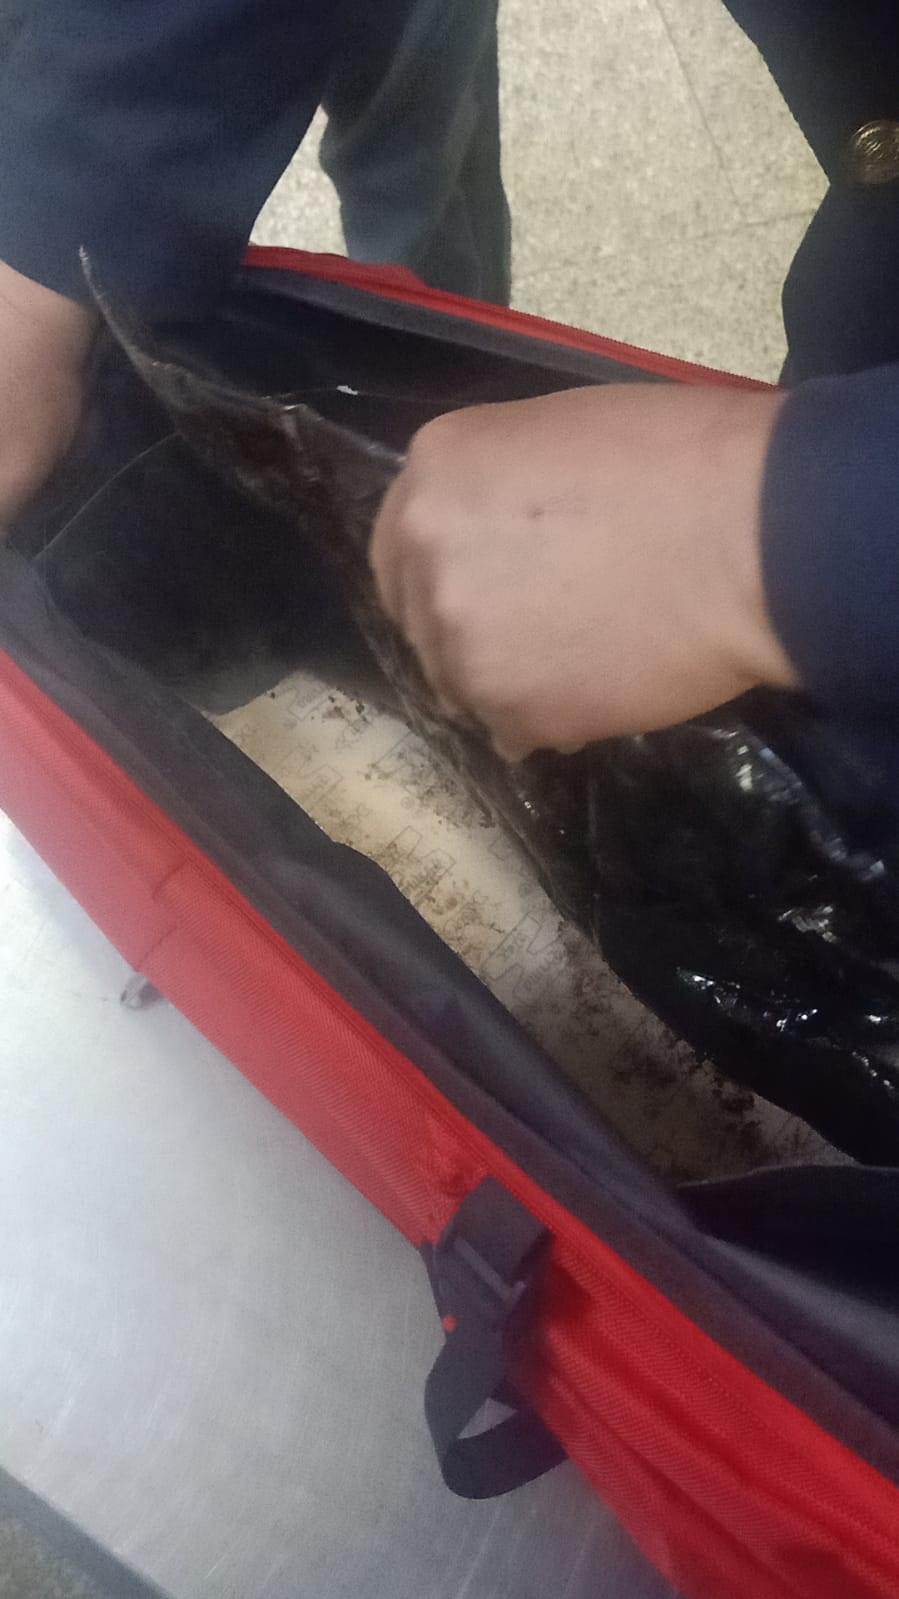 مطار تونس قرطاج/ كيلوغرامات من المخدرات في حقيبة مسافر